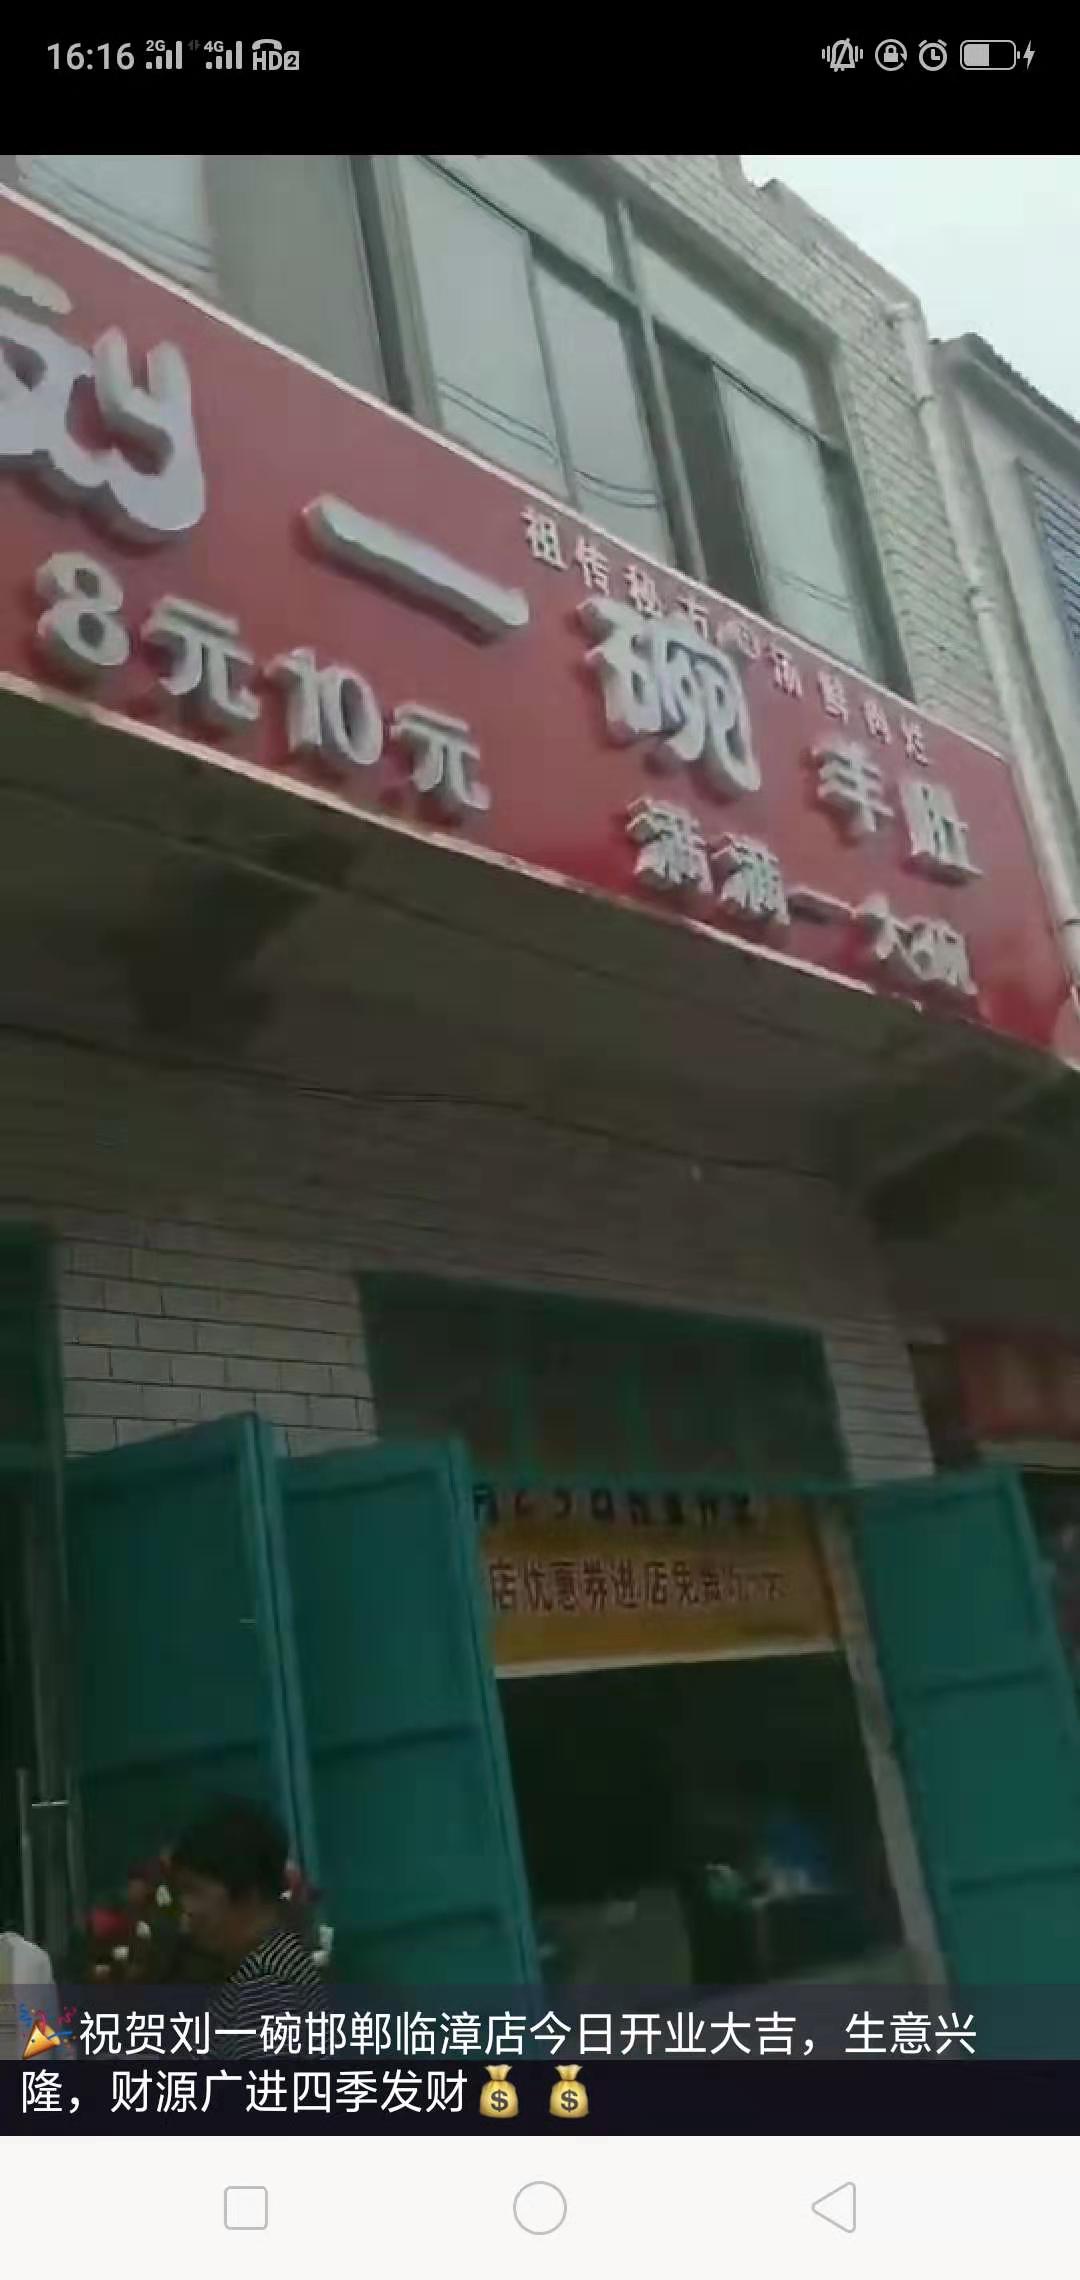 山东刘一碗邯郸河店于2019年8月23日盛大开业，祝开业大吉！